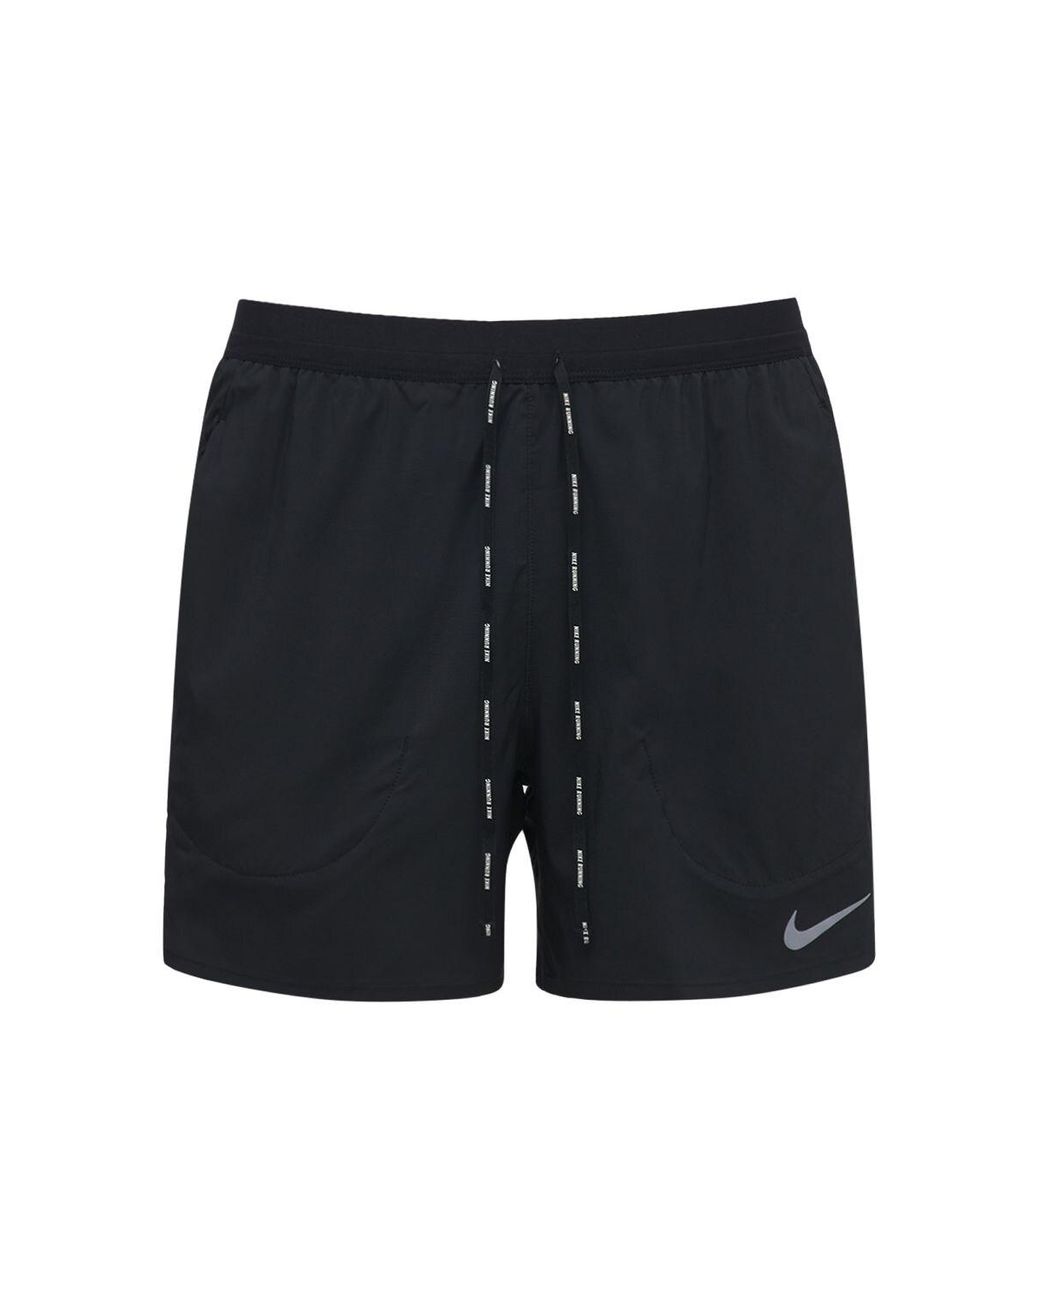 Nike Running Shorts in Black for Men - Lyst